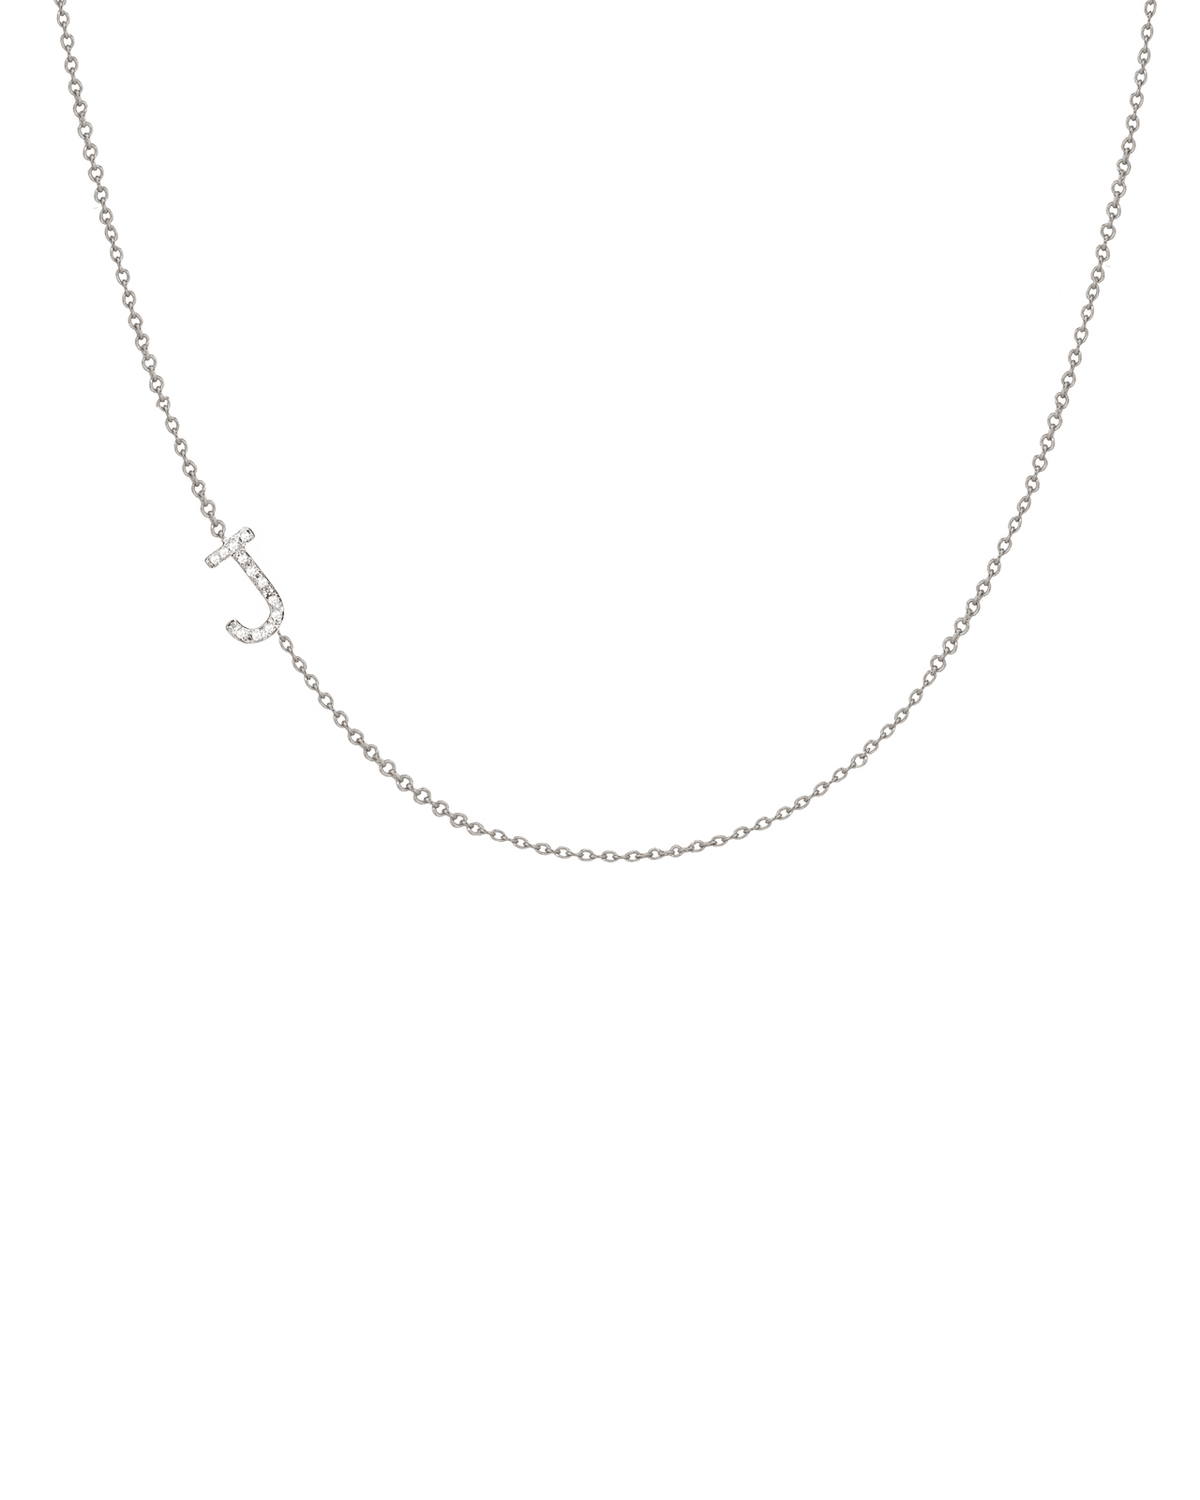 Zoe Lev Jewelry 14k White Gold Personalized Asymmetric Diamond Initial Necklace